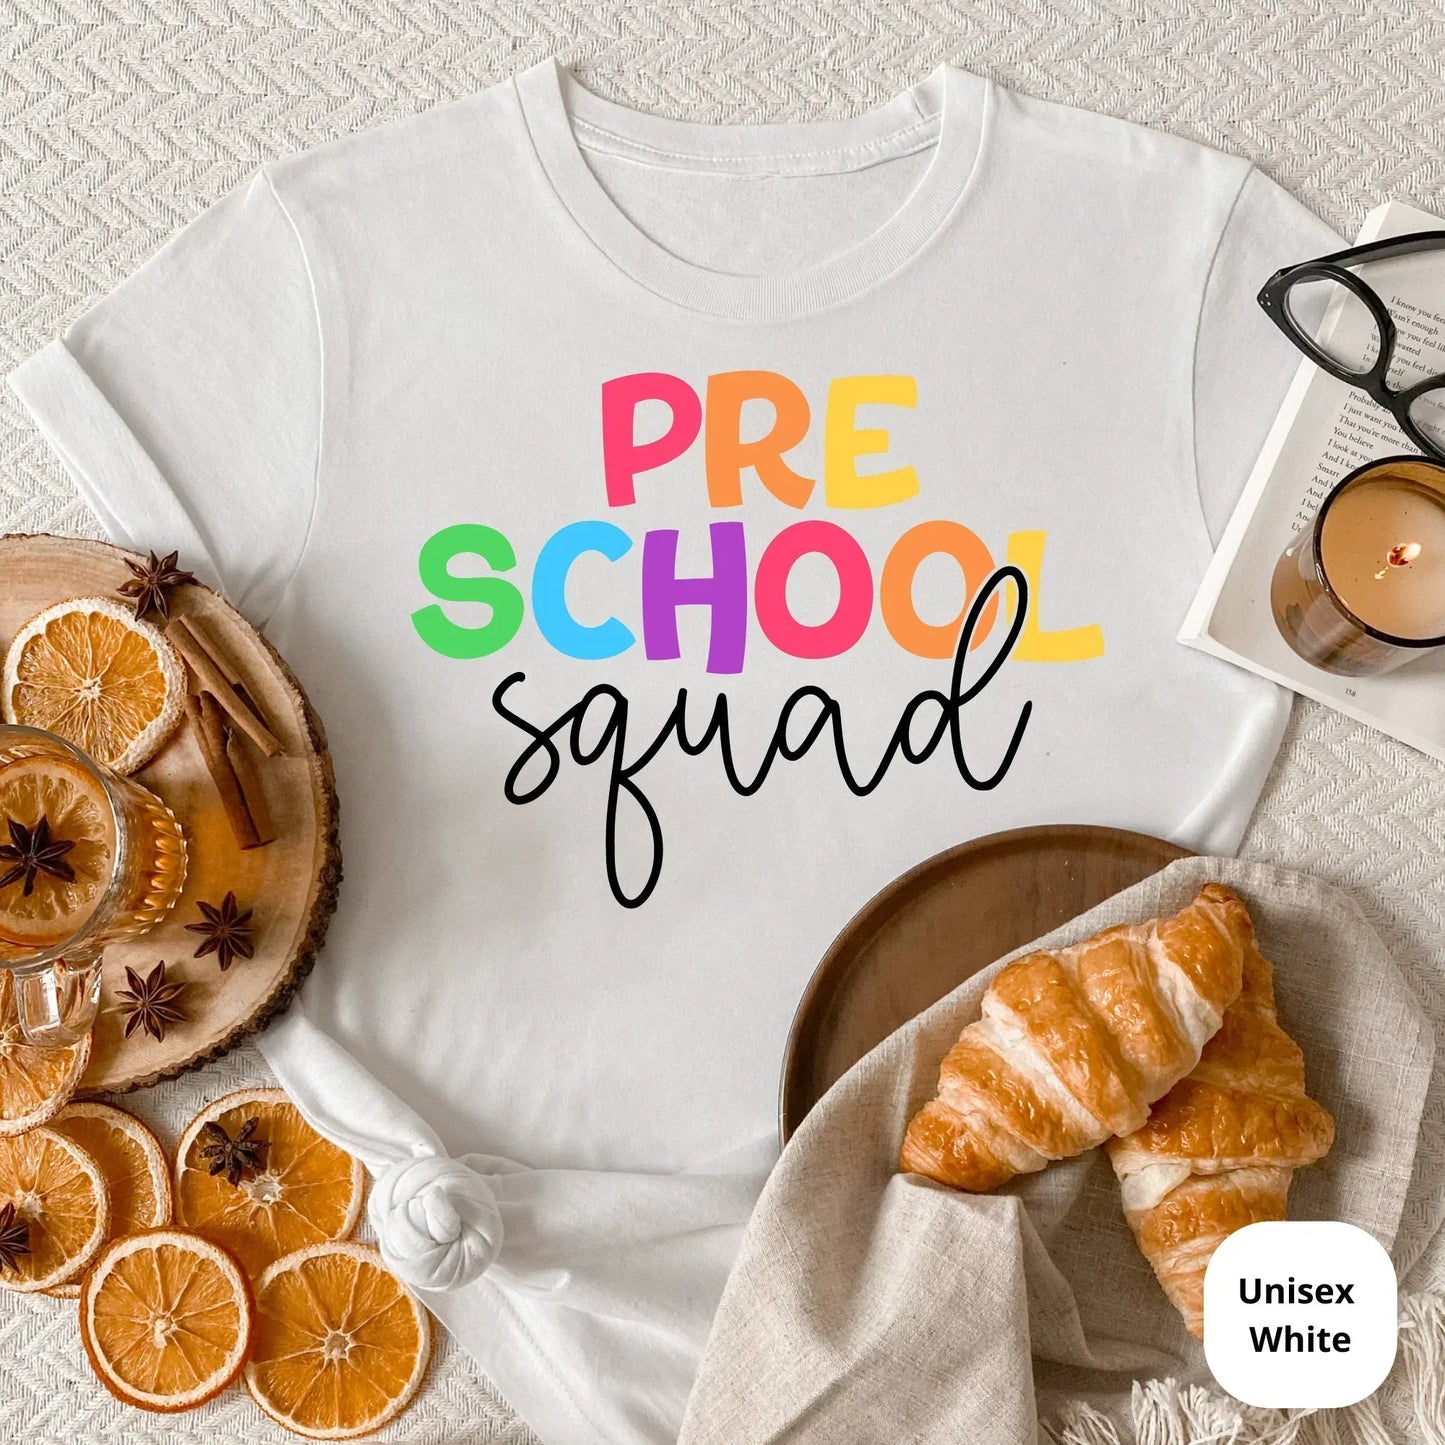 Pre-School Teacher T-Shirt, Pre-K Crew, New Teacher Gift, Matching Team Preschool Shirts, Back to School, Daycare Teacher Gift, Teacher Team HMDesignStudioUS